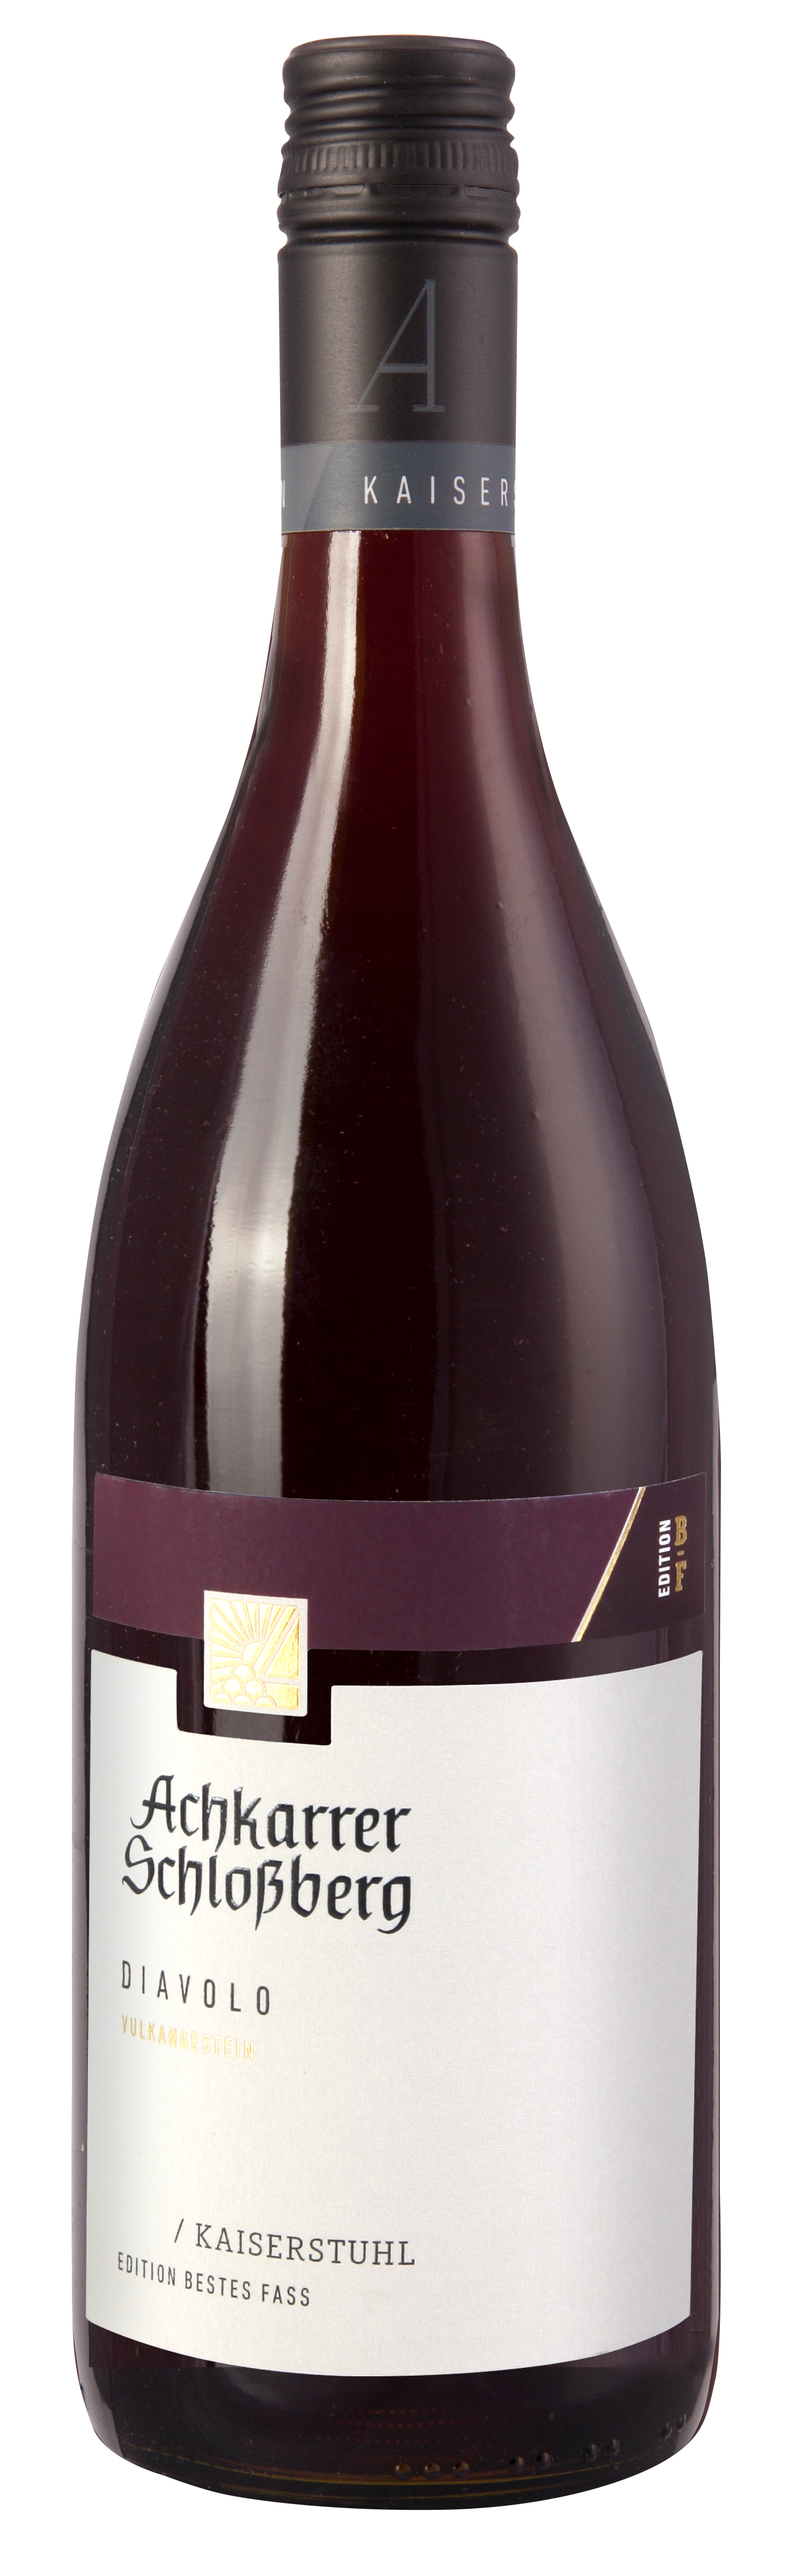 Achkarrer Schlossberg  DIAVOLO   - BESTES FASS - Rotwein Cuvée Qualitätswein